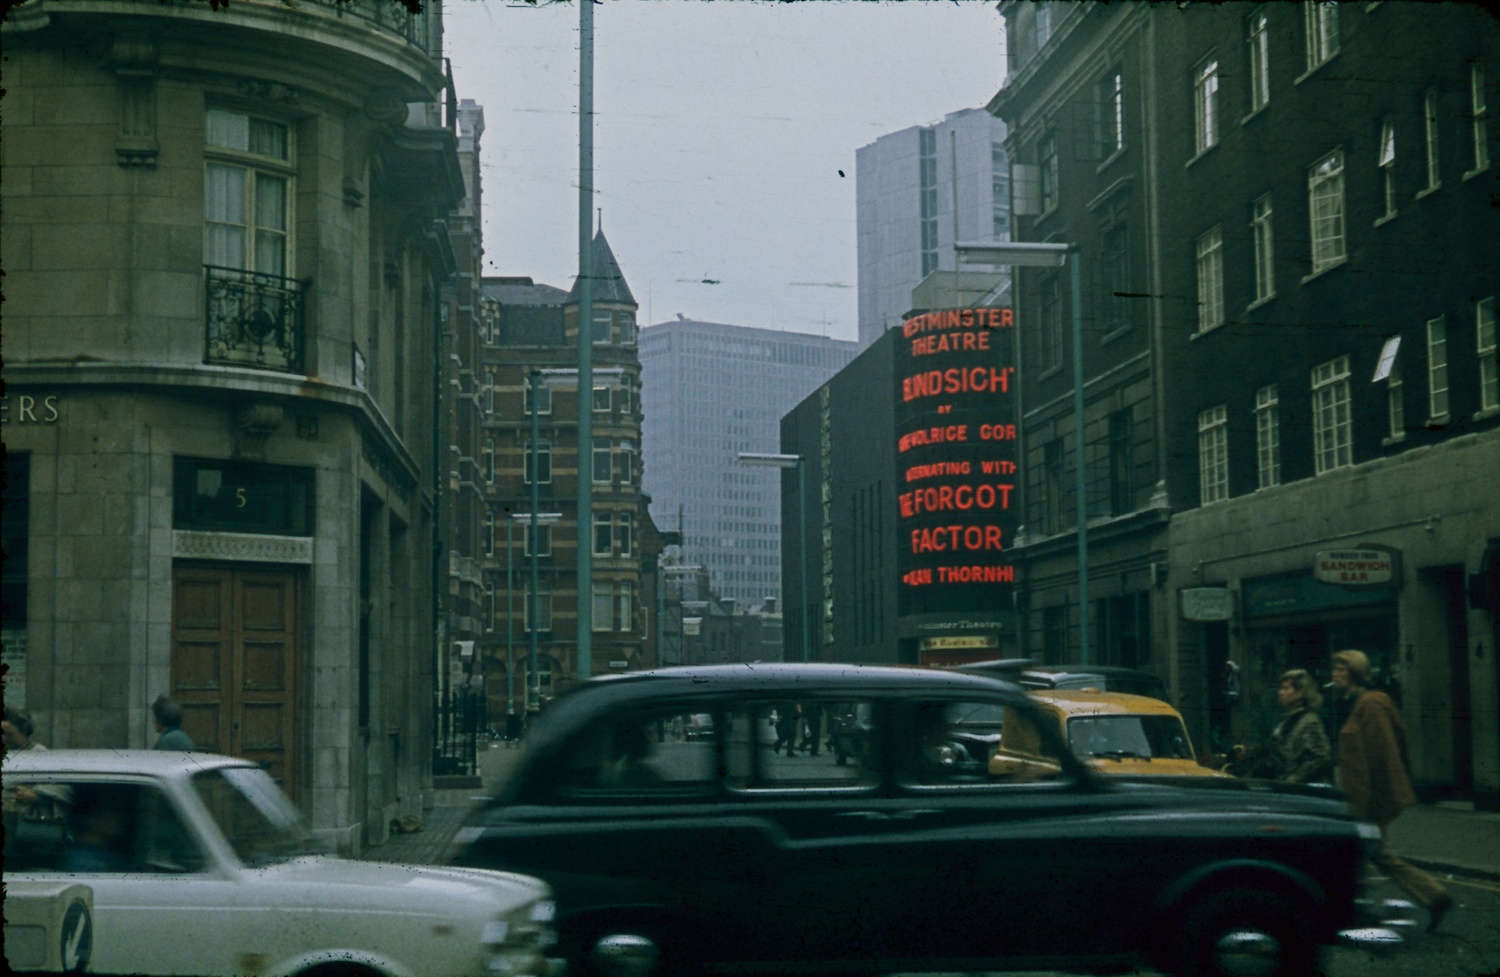 London 1970 West End